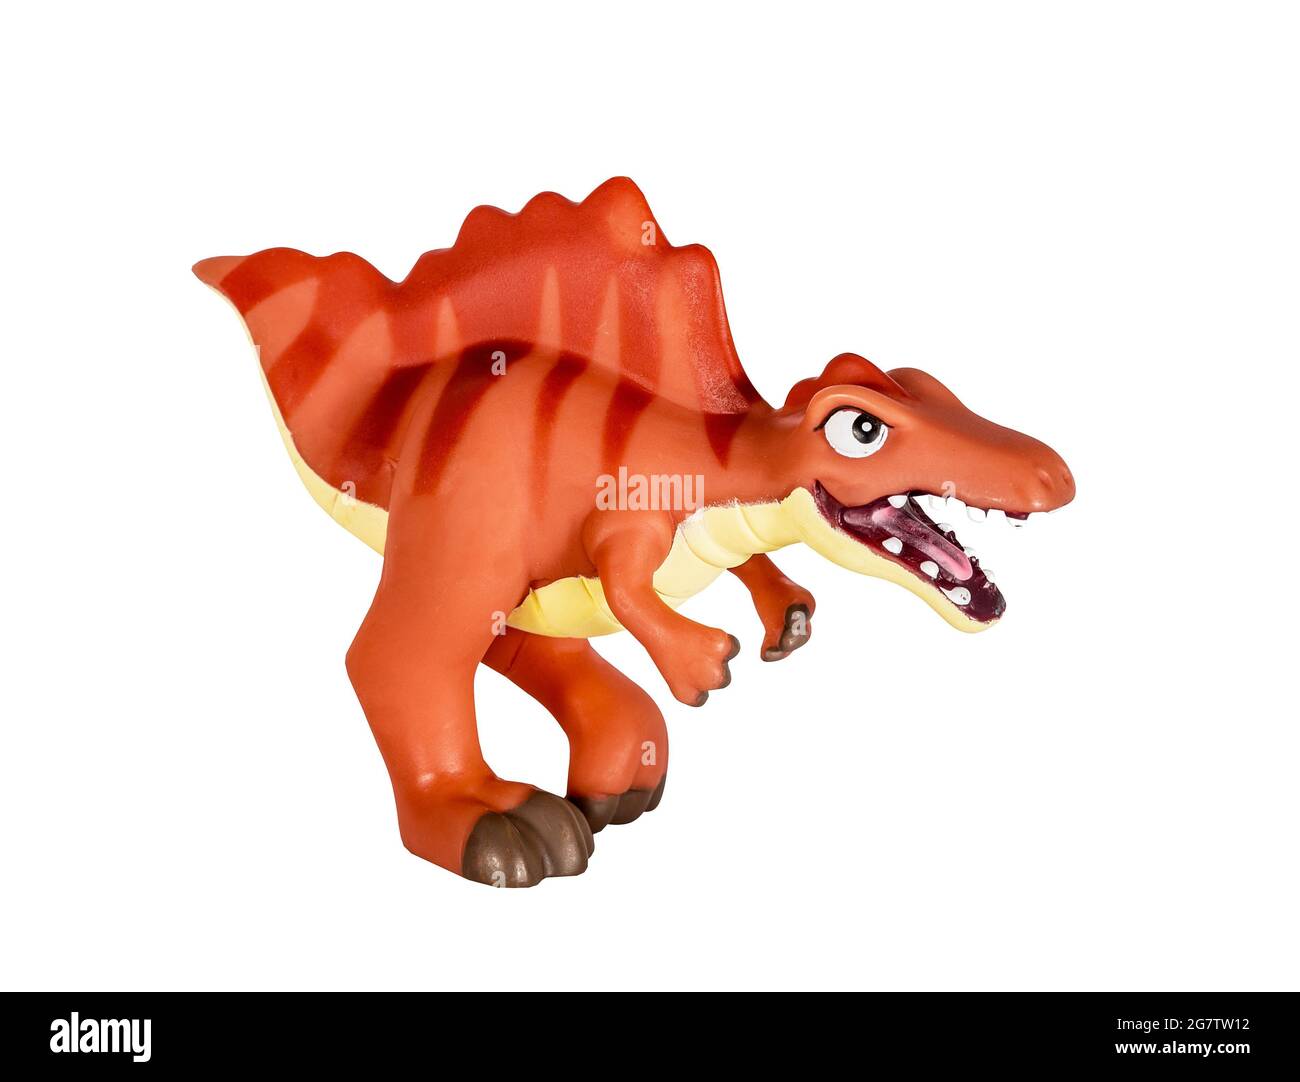 Plastic orange dinosaur toy, Spinosaurus isolated on white background Stock Photo